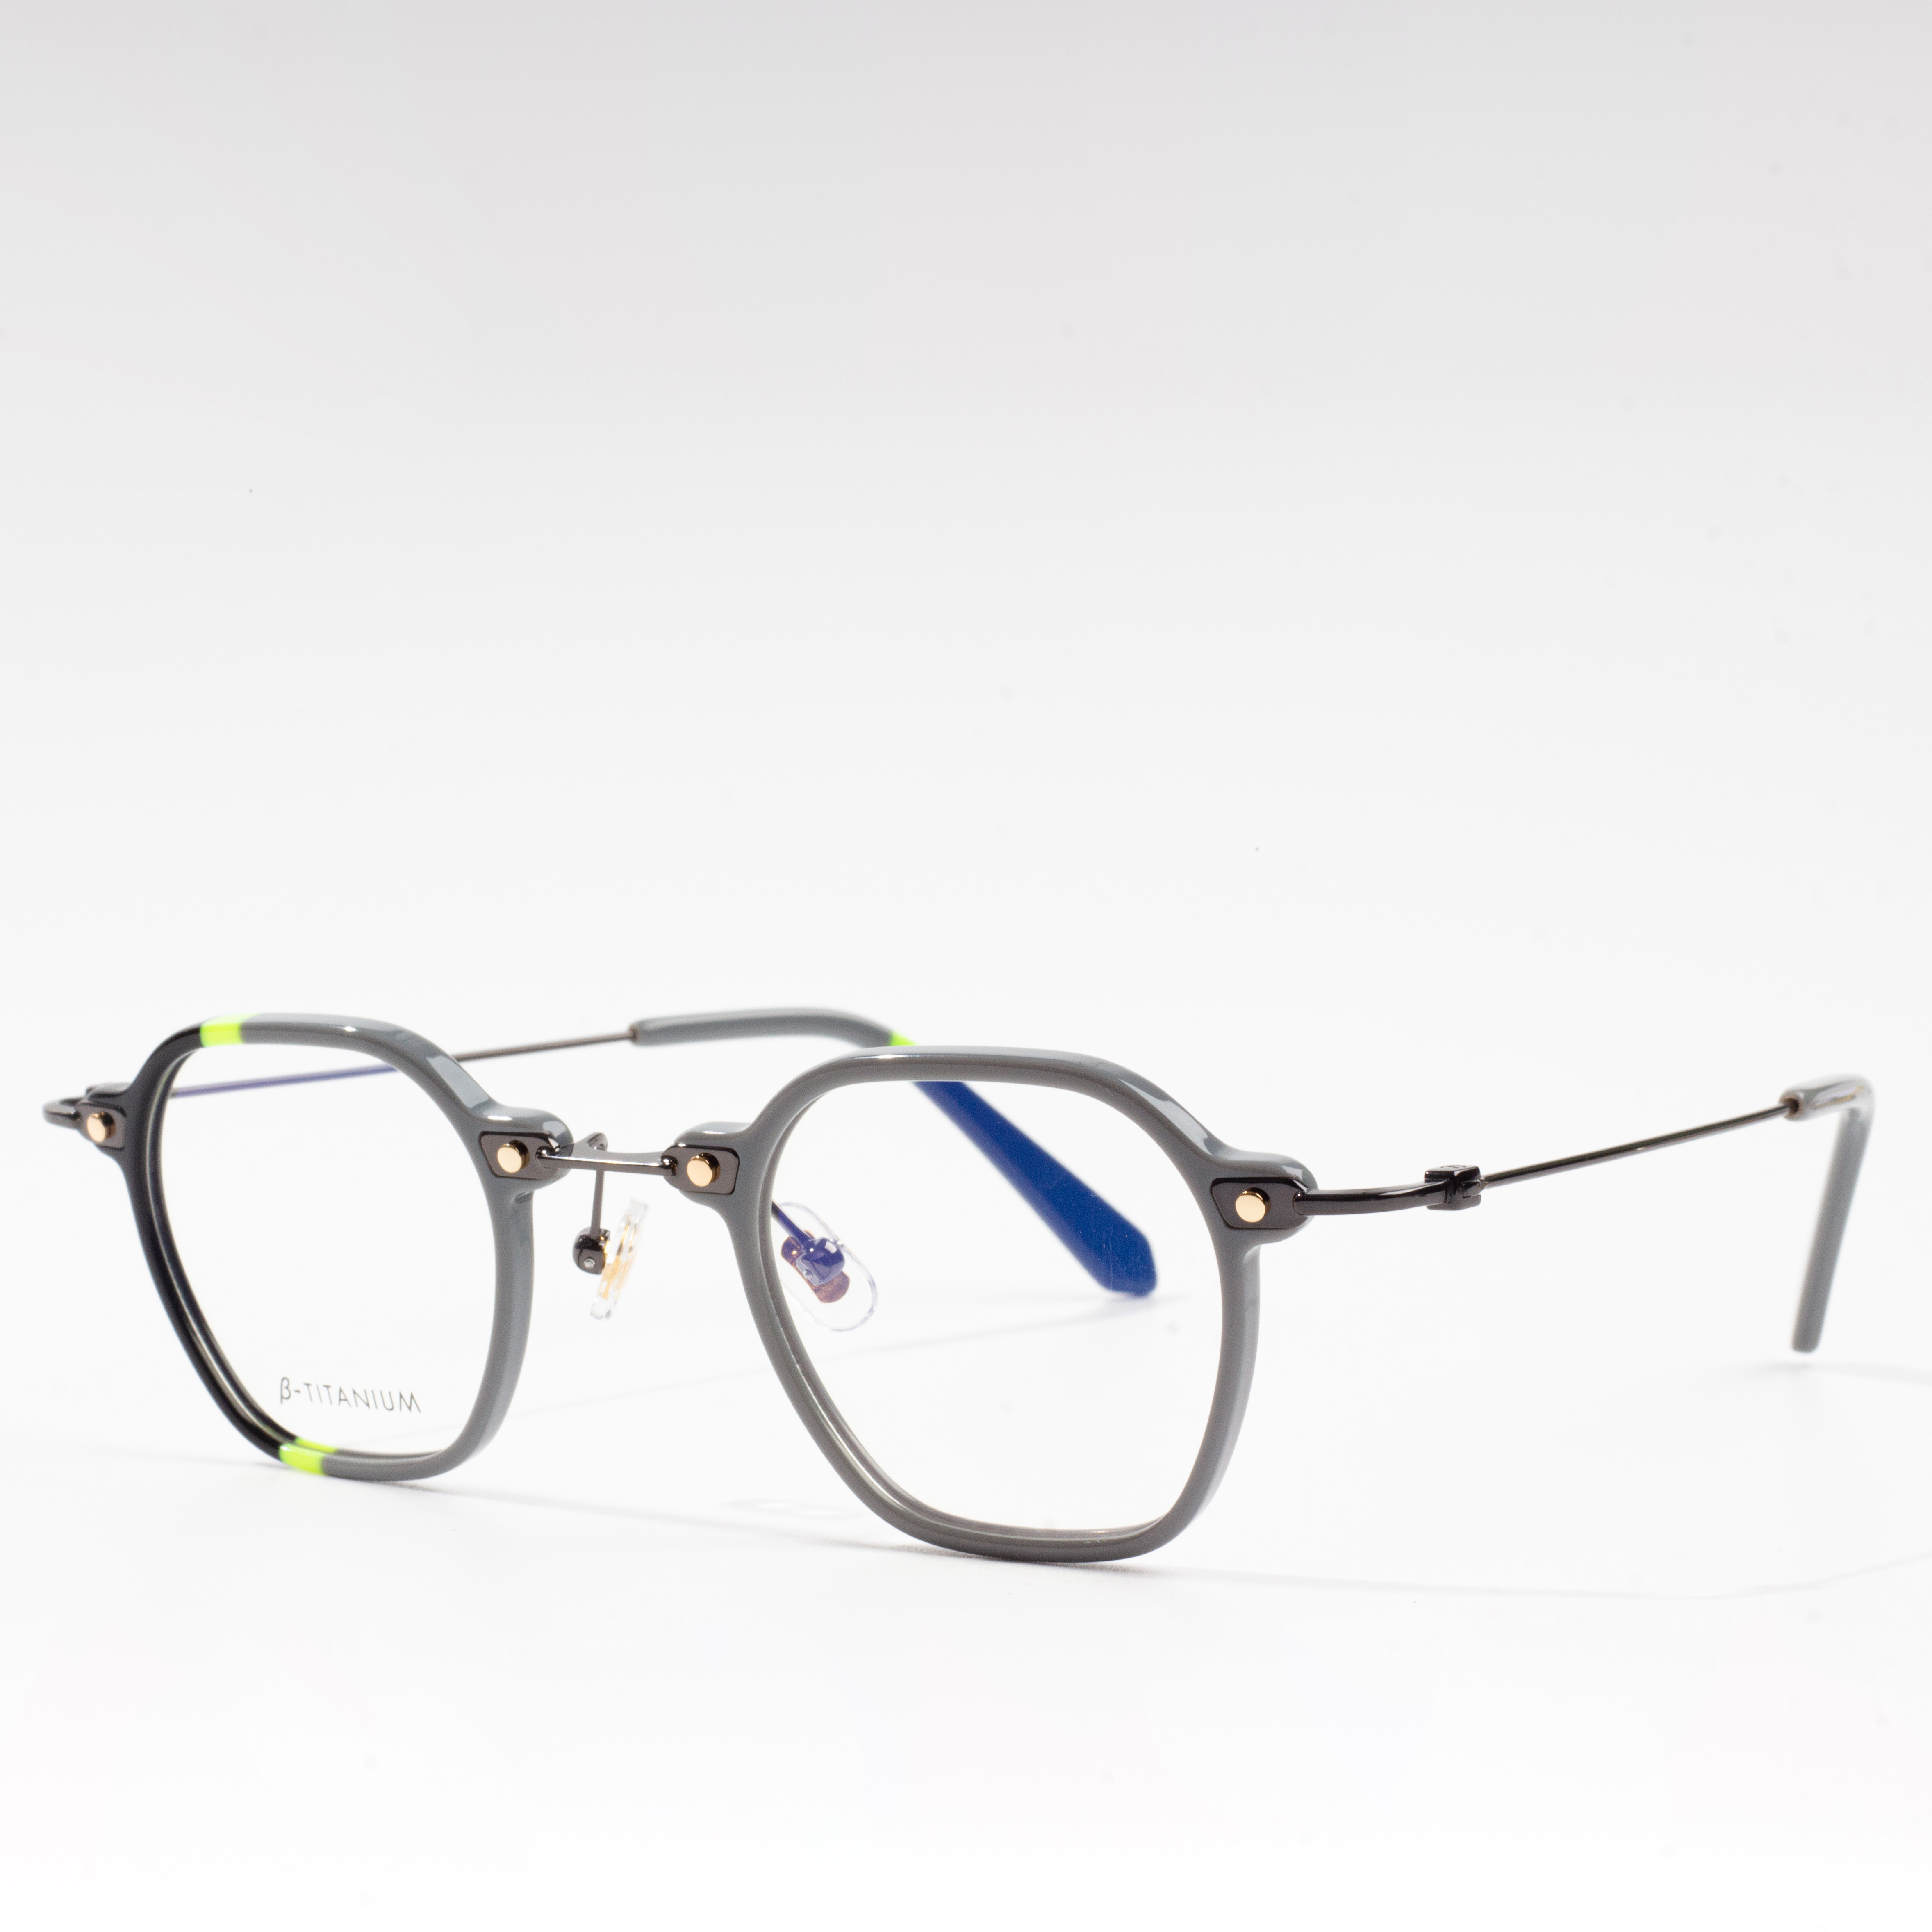 најиздржљивији оквири за наочаре